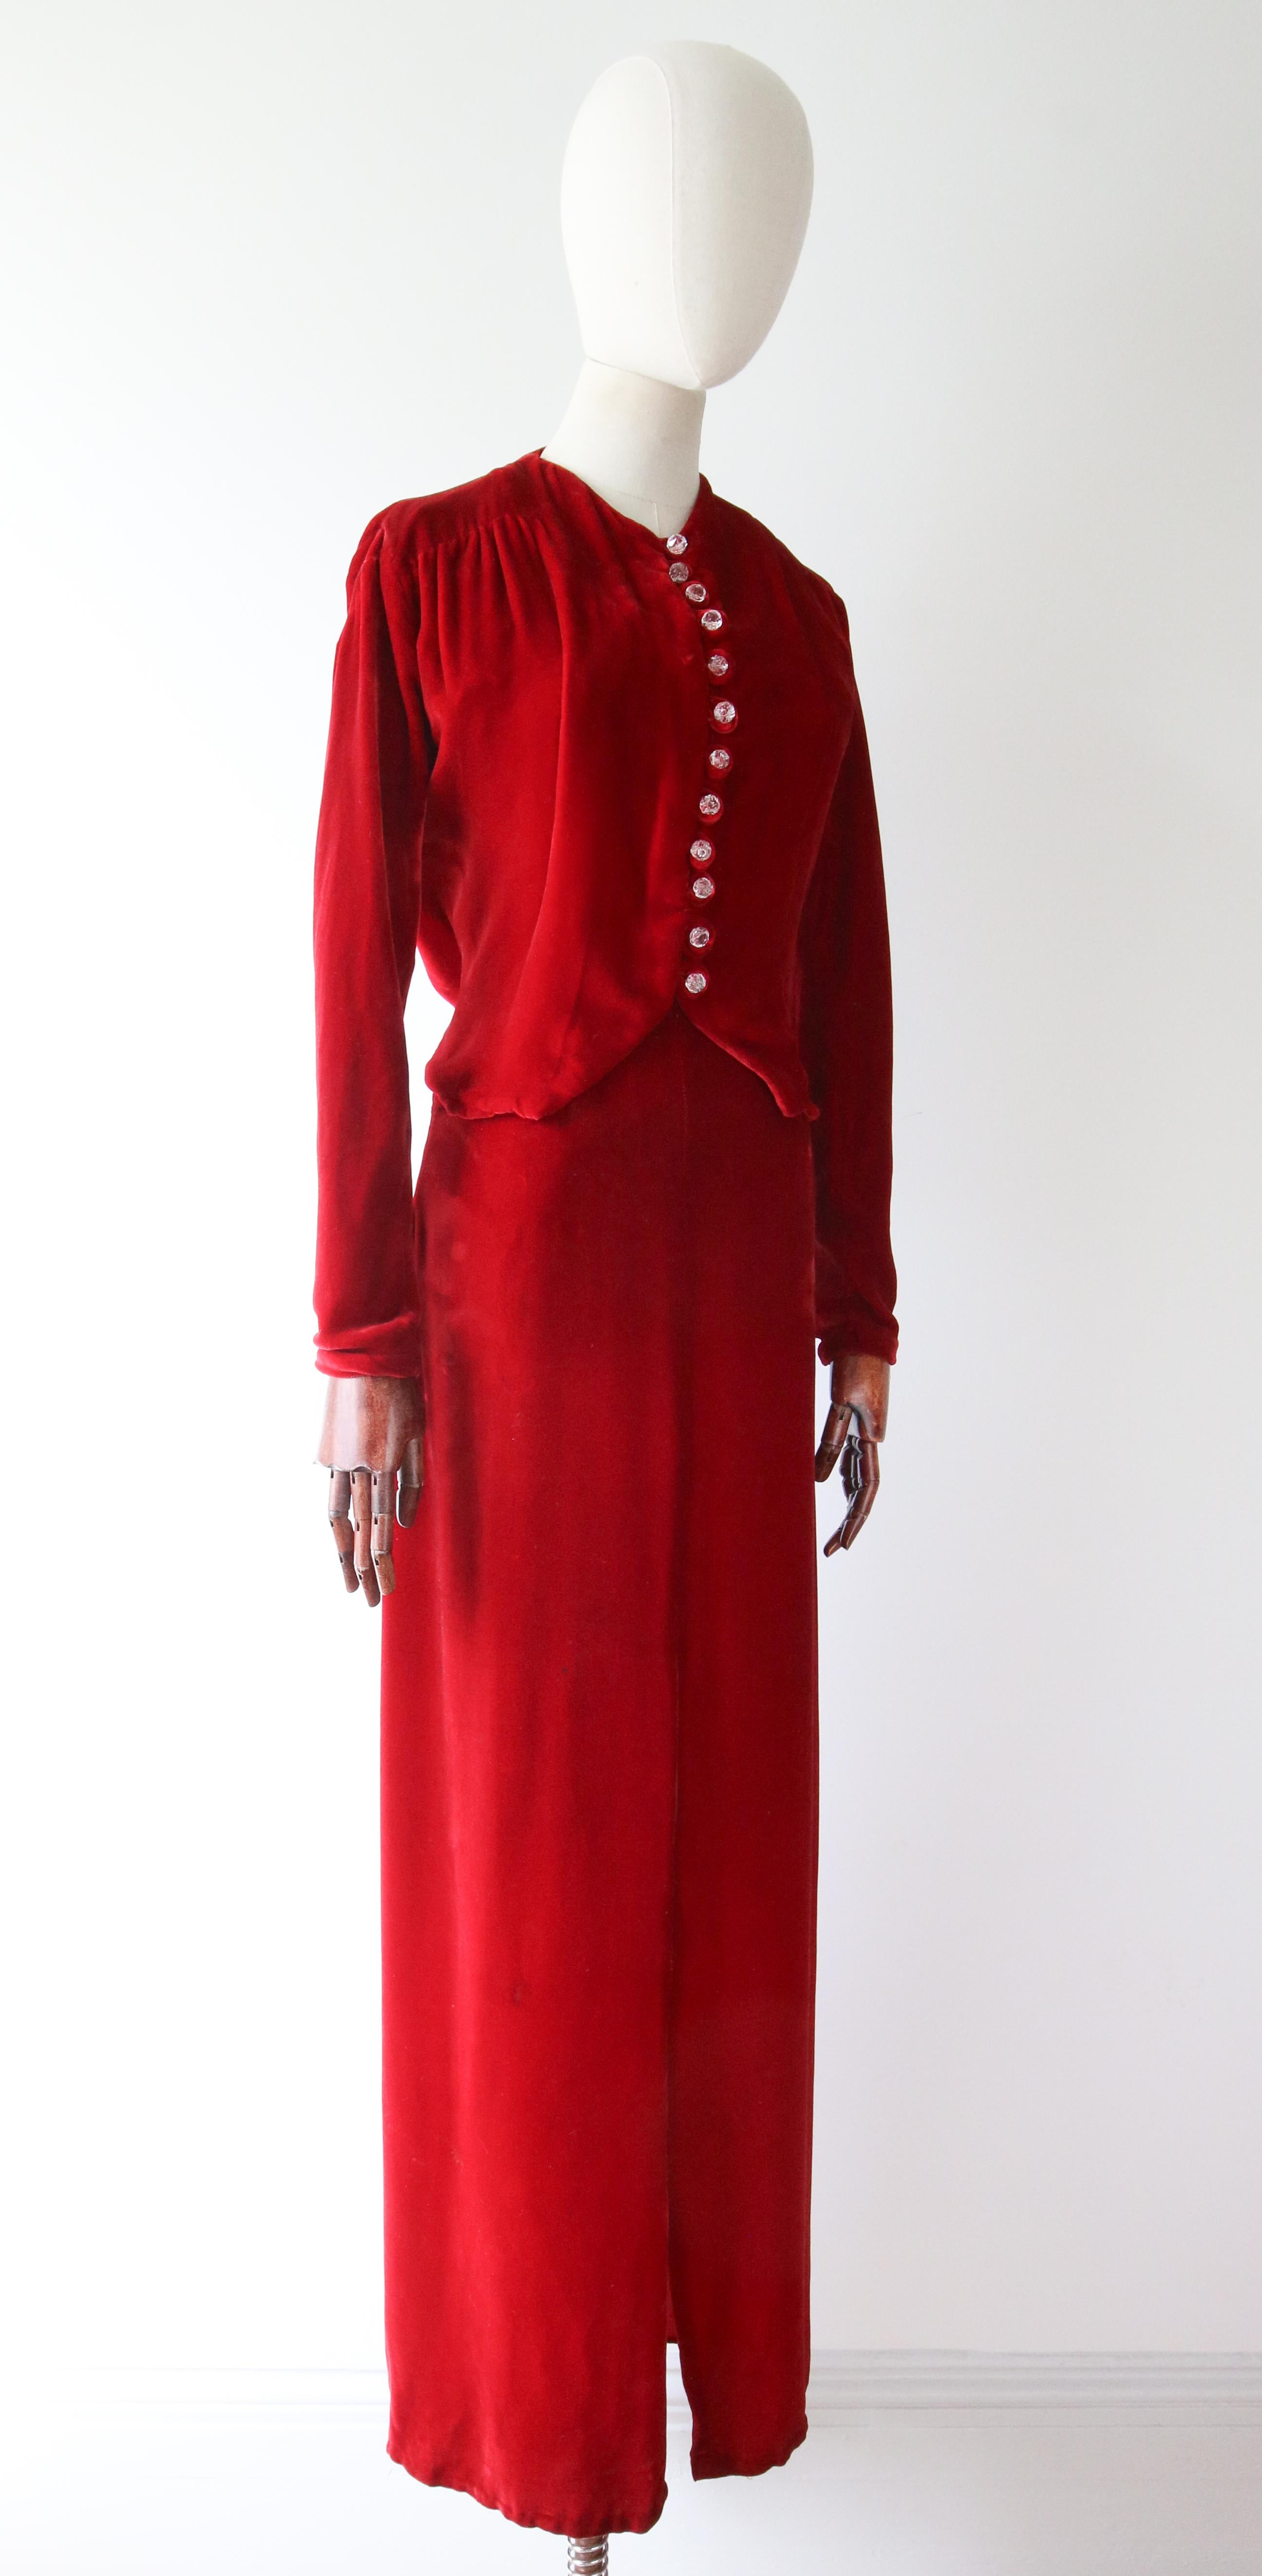 Vintage 1930's red velvet dress and jacket 1930's bias cut UK 6- 8 US 2-4 For Sale 8